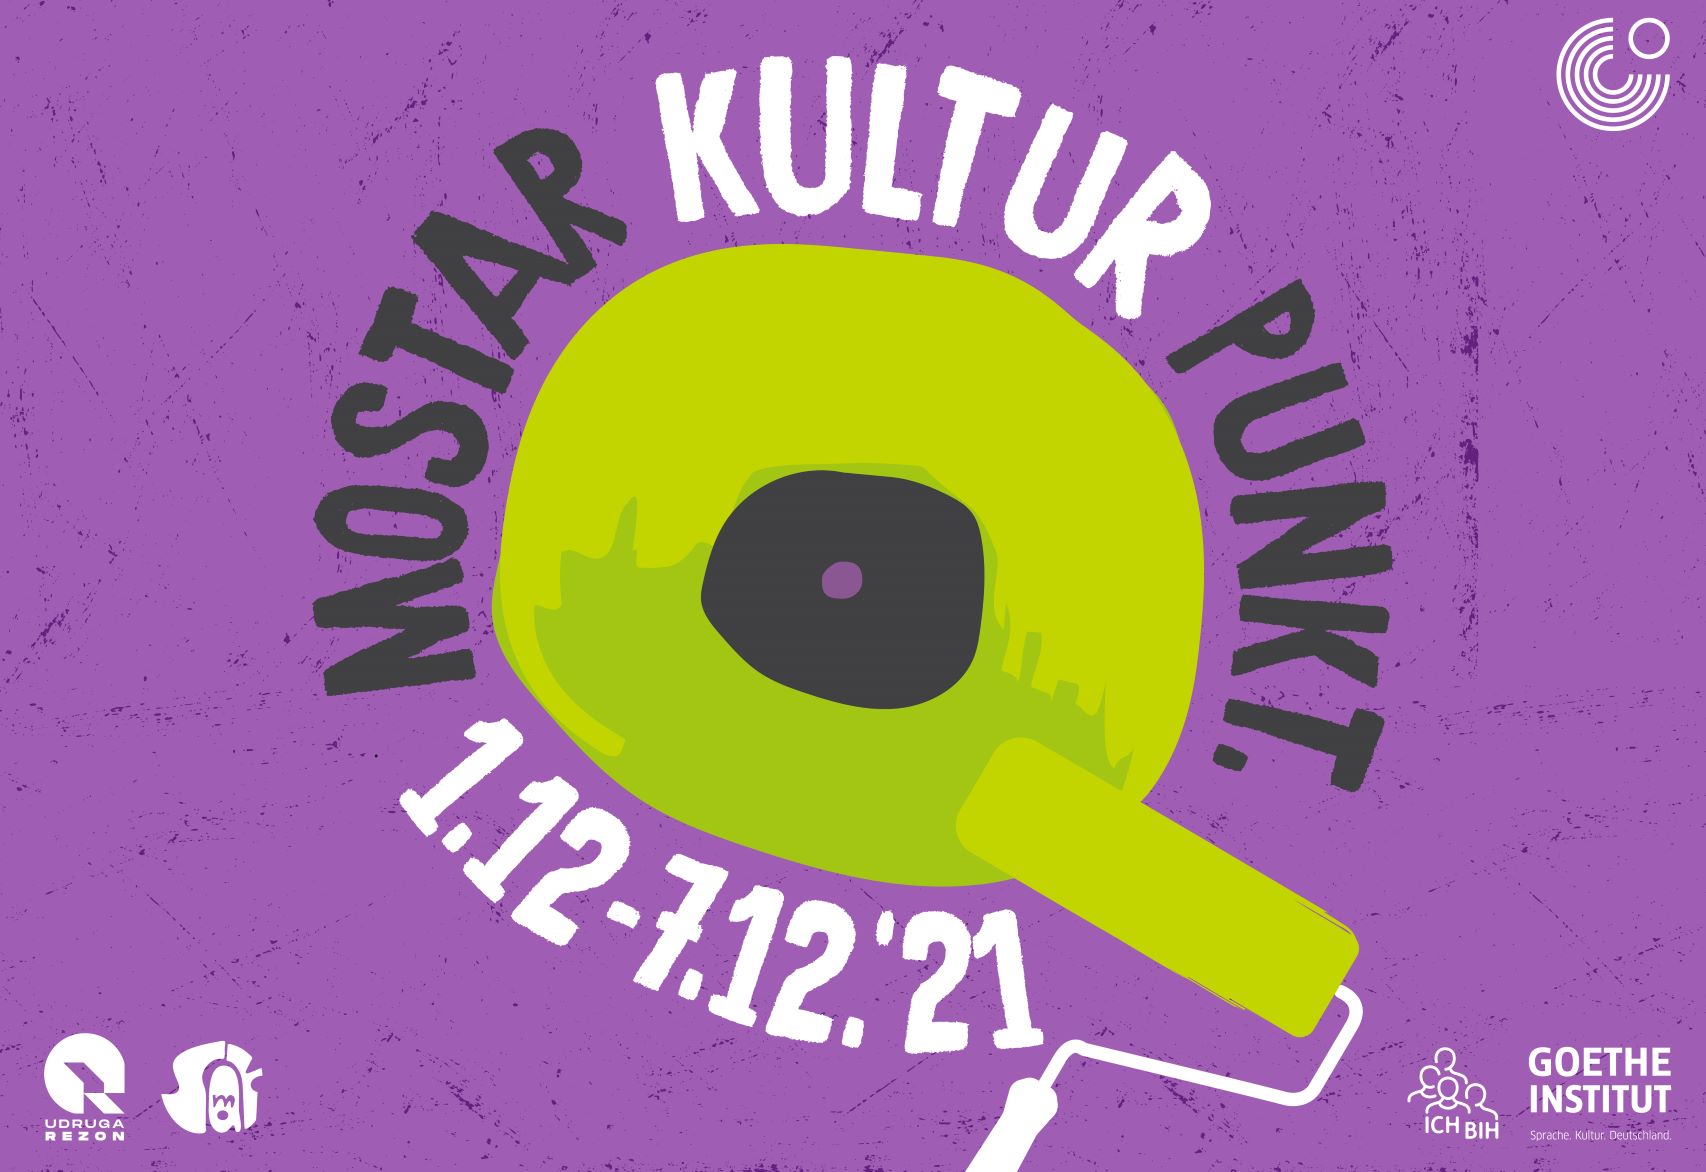  Mostar Kultur Punkt: Novi konceptualni program za unapređenje urbane kulture